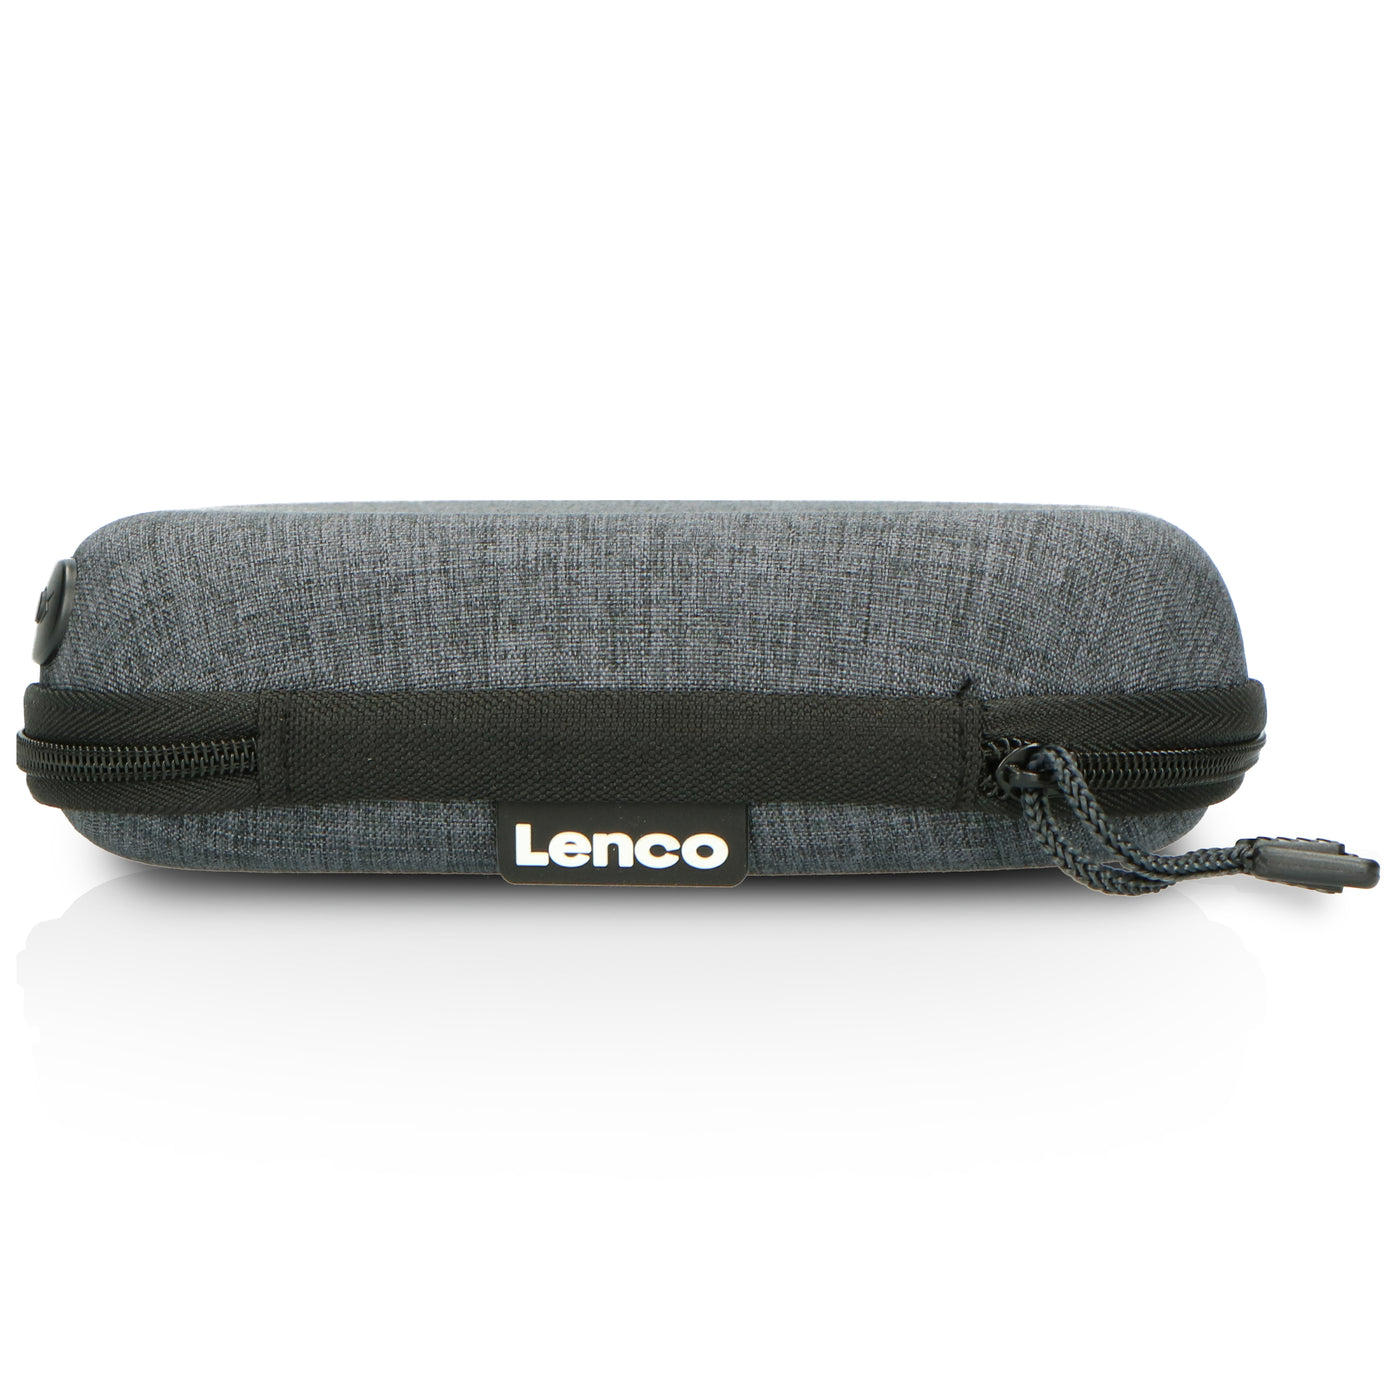 Lenco CD-201SI+PBC-50GY - Tragbarer CD/MP3-Player mit Anti-Schock-Schutz und praktischer Aufbewahrungstasche mit eingebauter Powerbank - Silber/Grau